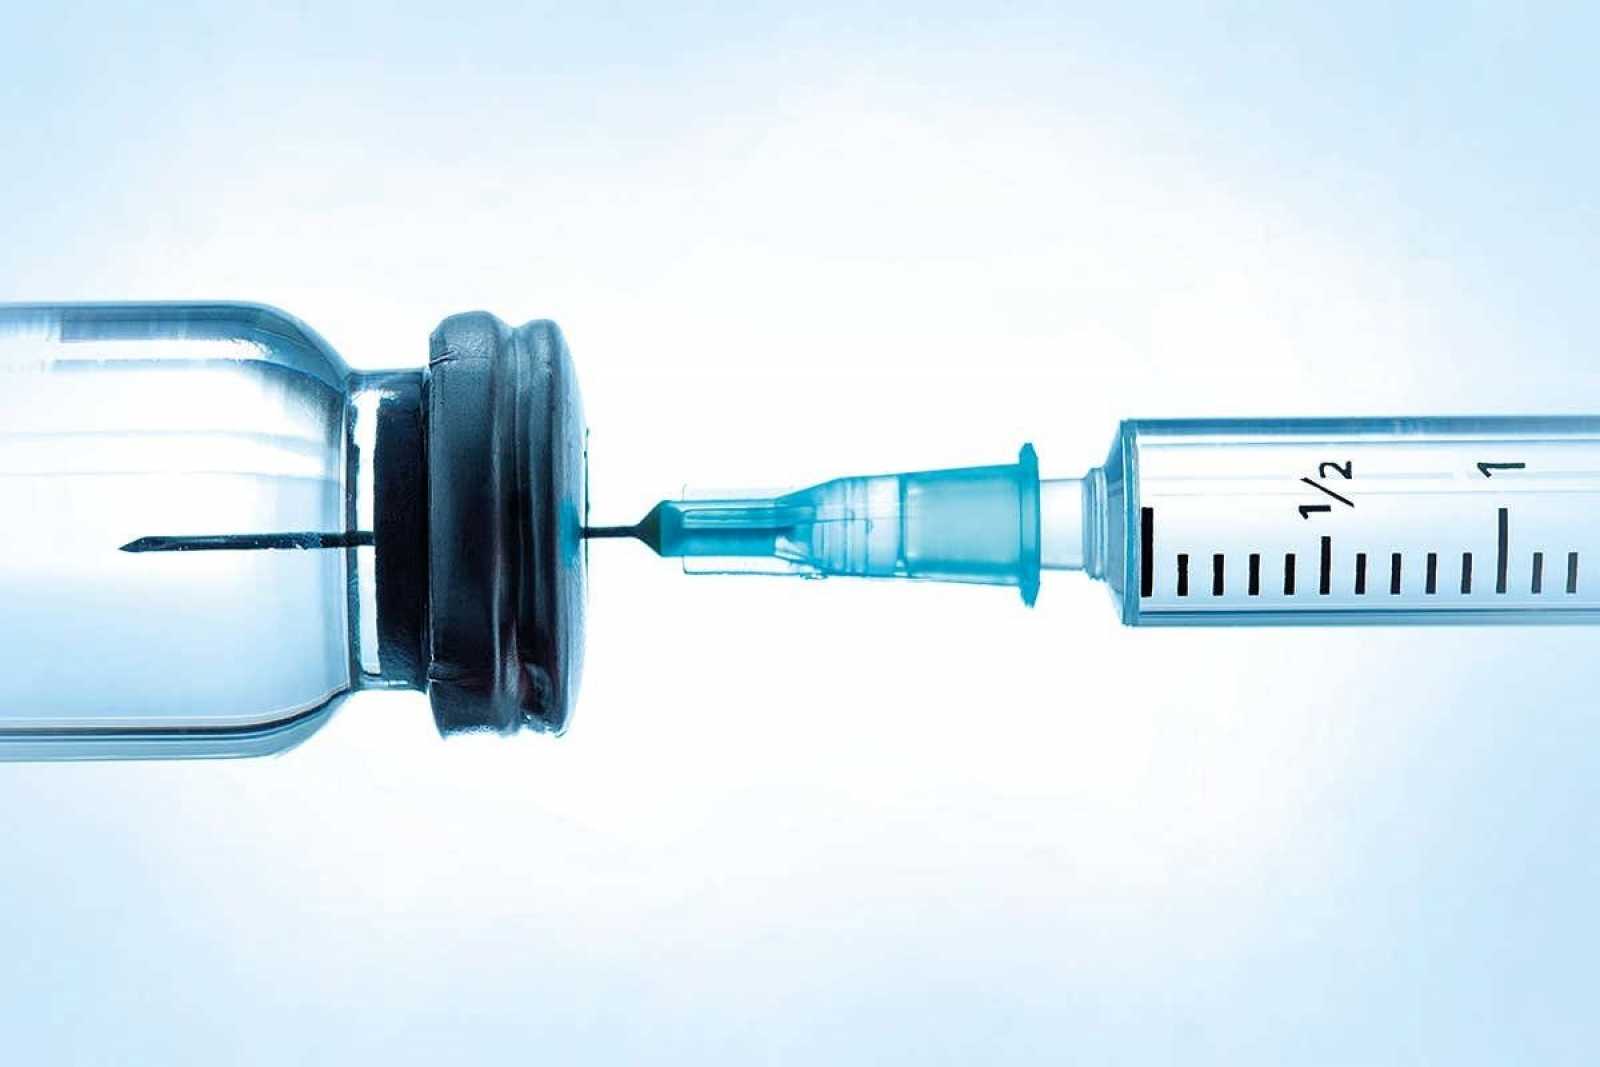 Κορωνοϊός: Ρωσικό εμβόλιο σε σπρέι έδειξε ανοσολογική απόκριση